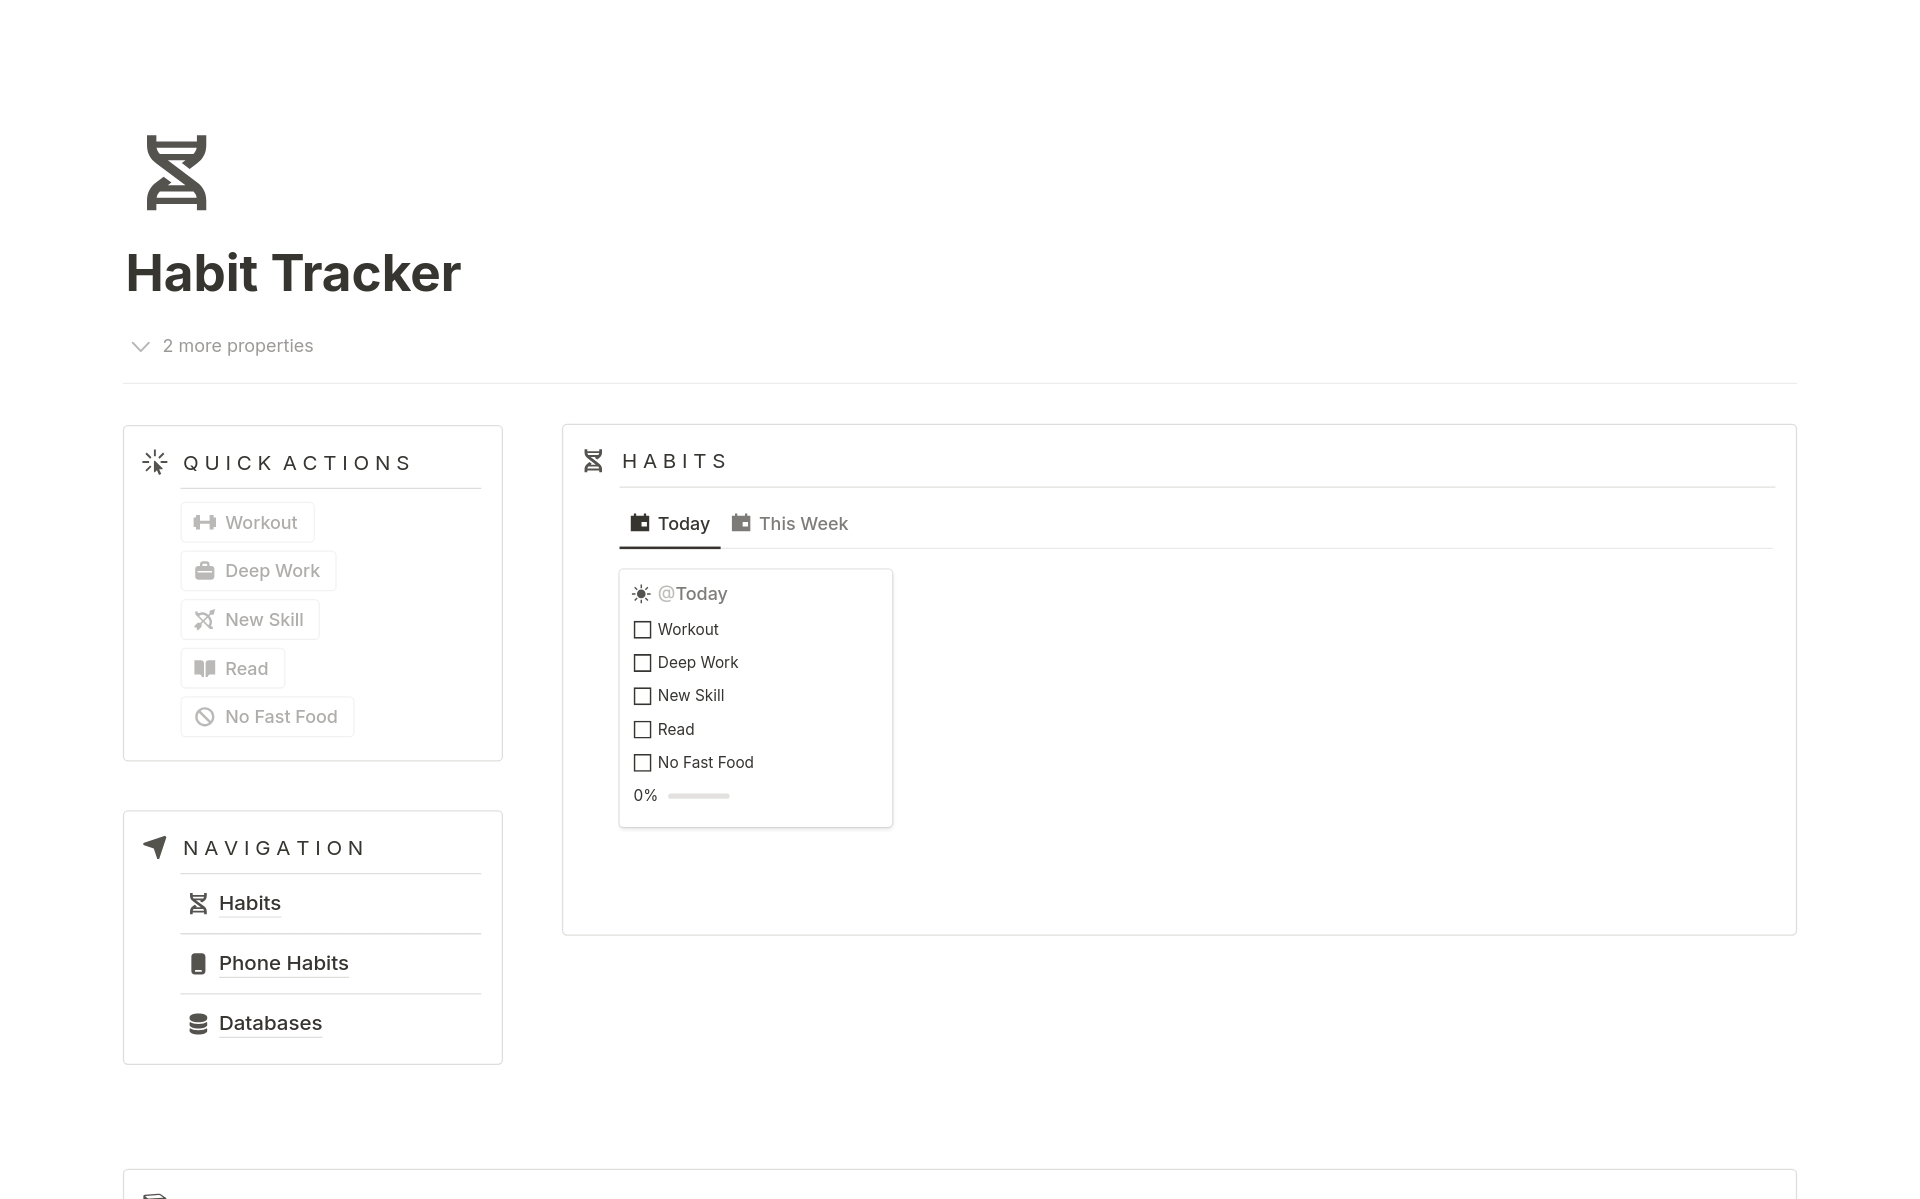 Vista previa de una plantilla para Habit Tracker